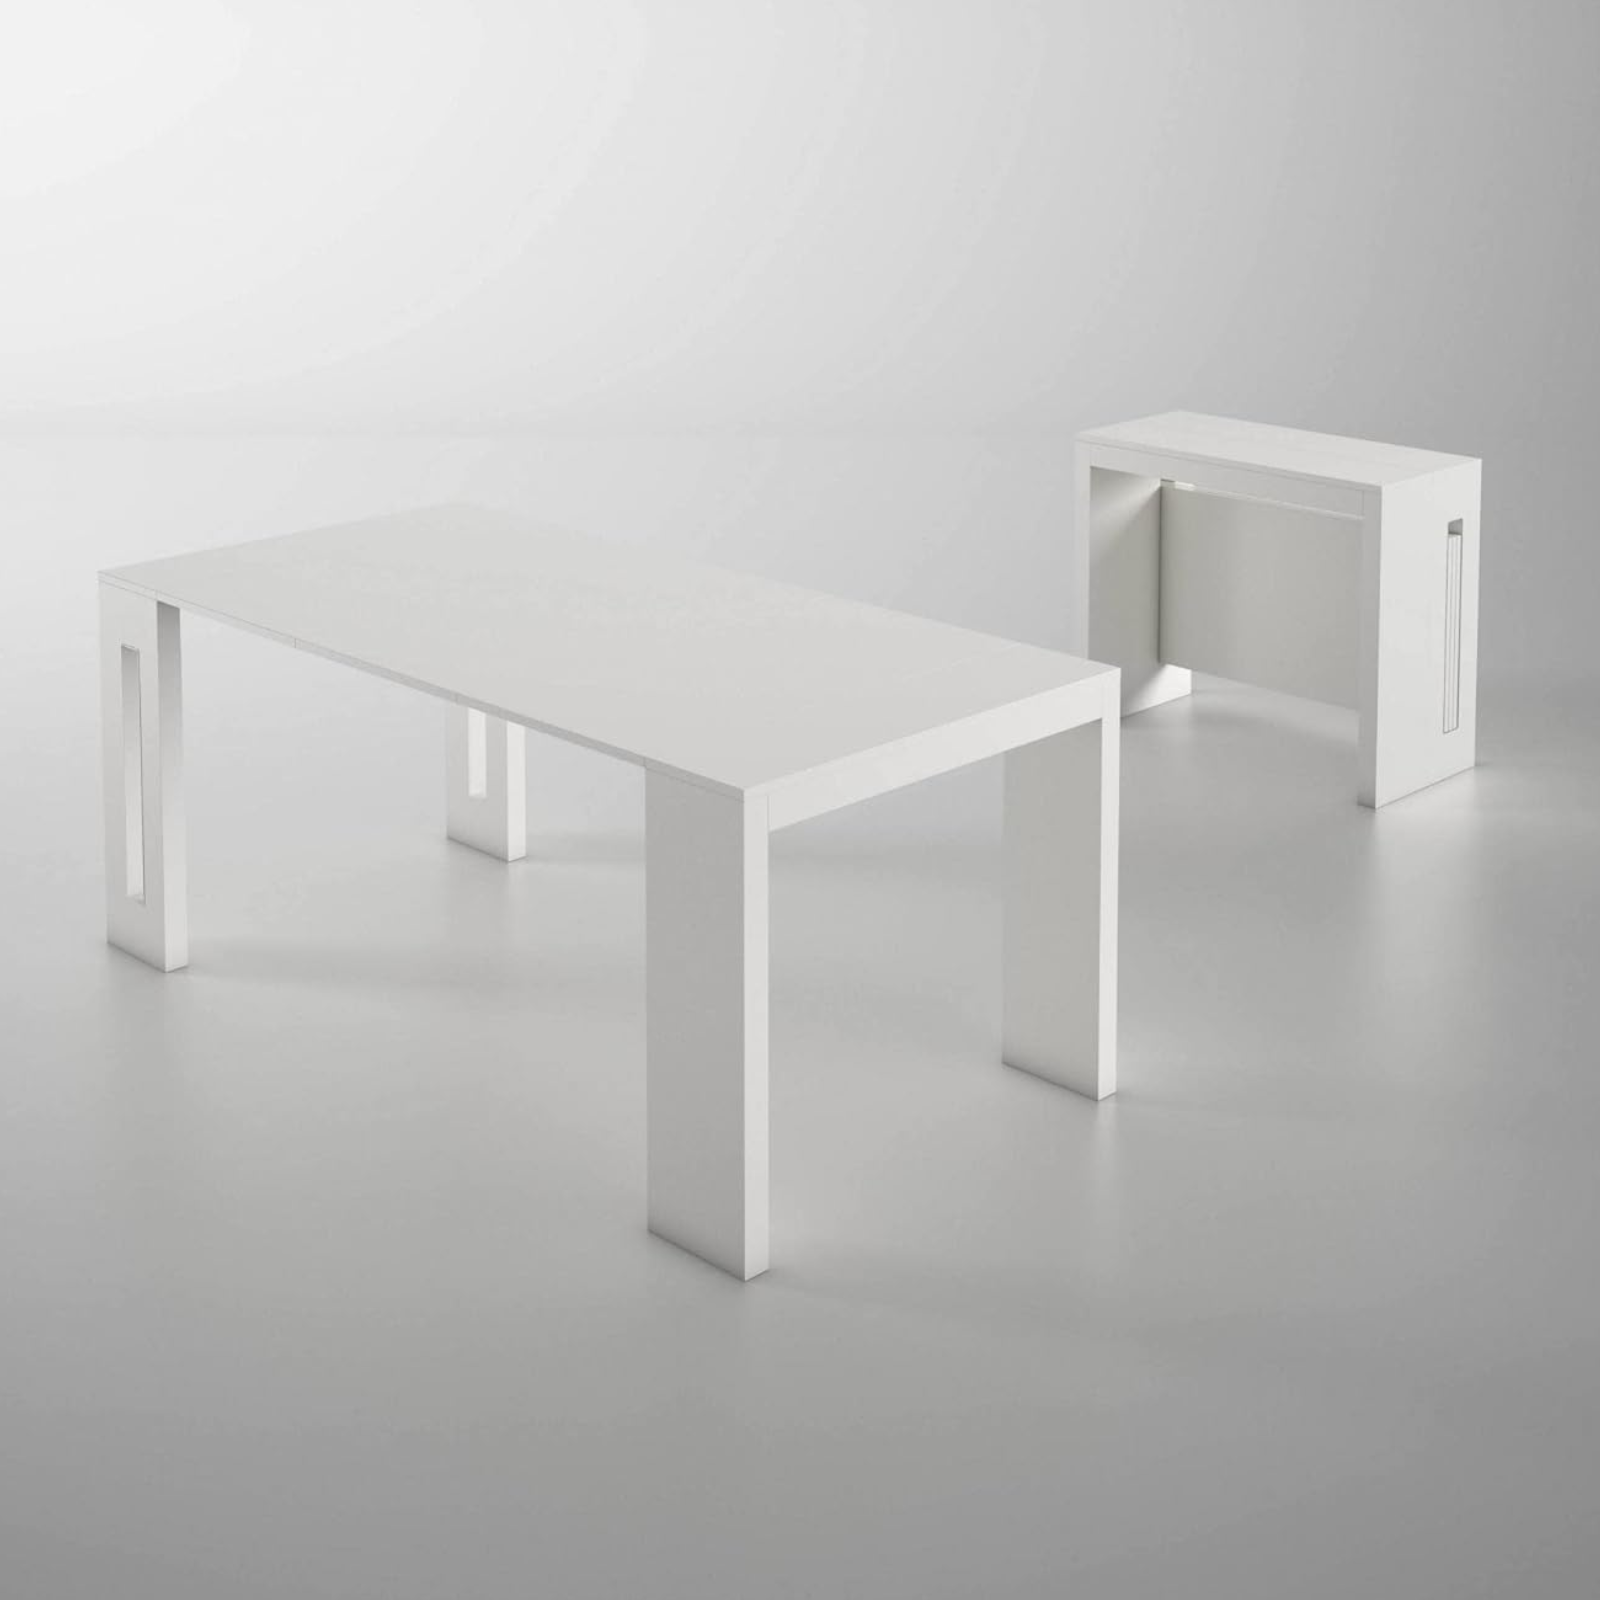 Tavolo 90x44/186 cm consolle allungabile in legno bianco design moderno - Extè Plus